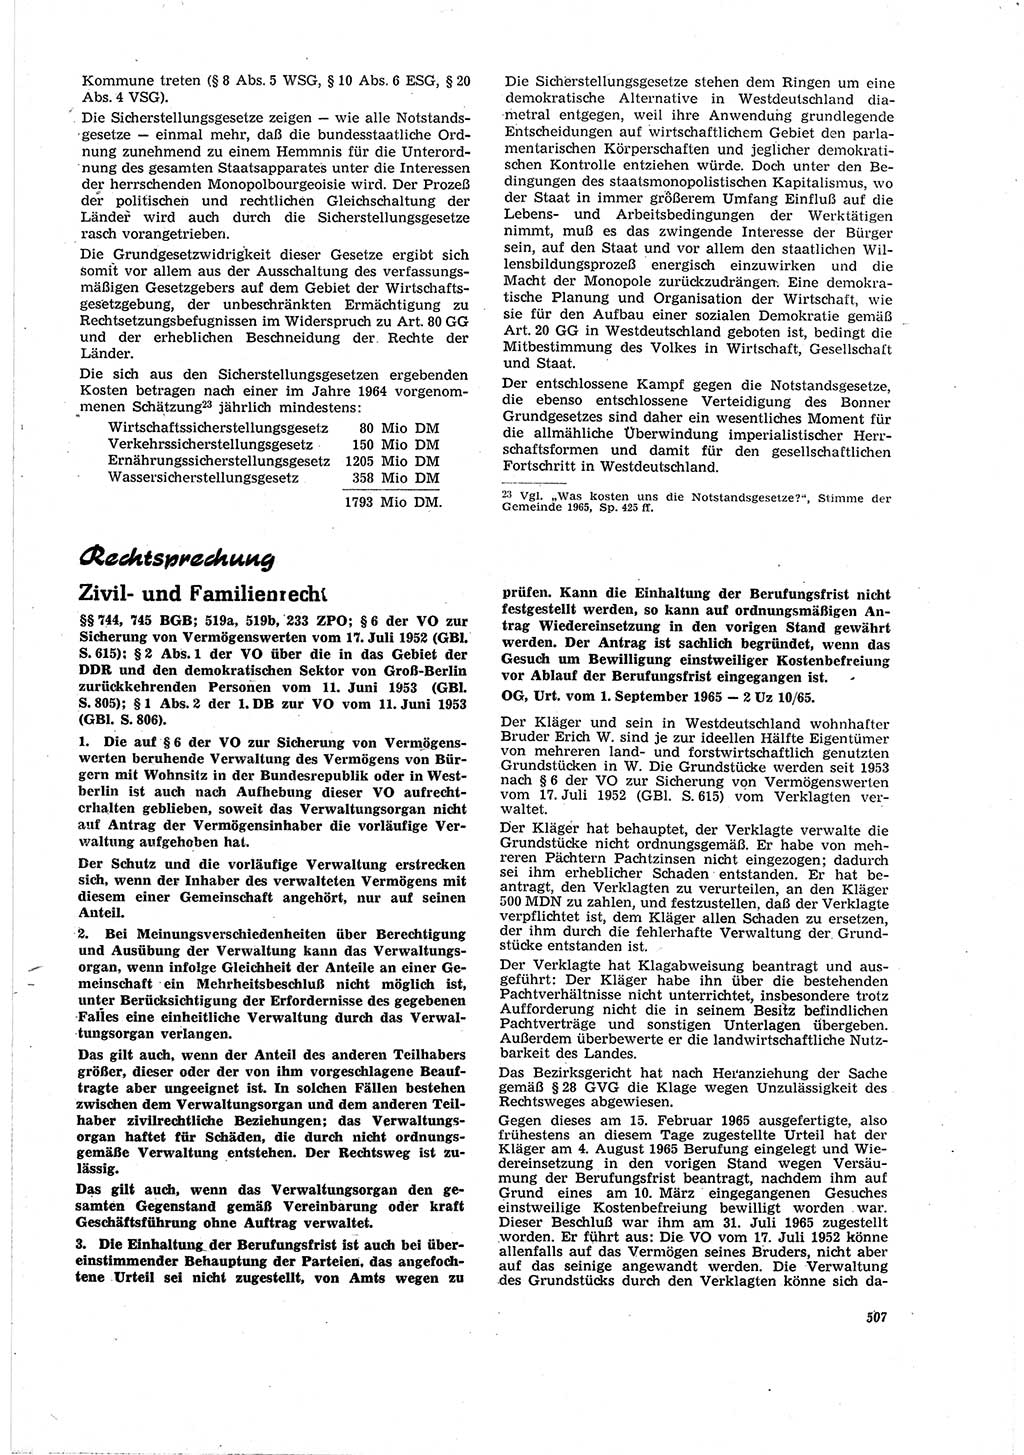 Neue Justiz (NJ), Zeitschrift für Recht und Rechtswissenschaft [Deutsche Demokratische Republik (DDR)], 20. Jahrgang 1966, Seite 507 (NJ DDR 1966, S. 507)